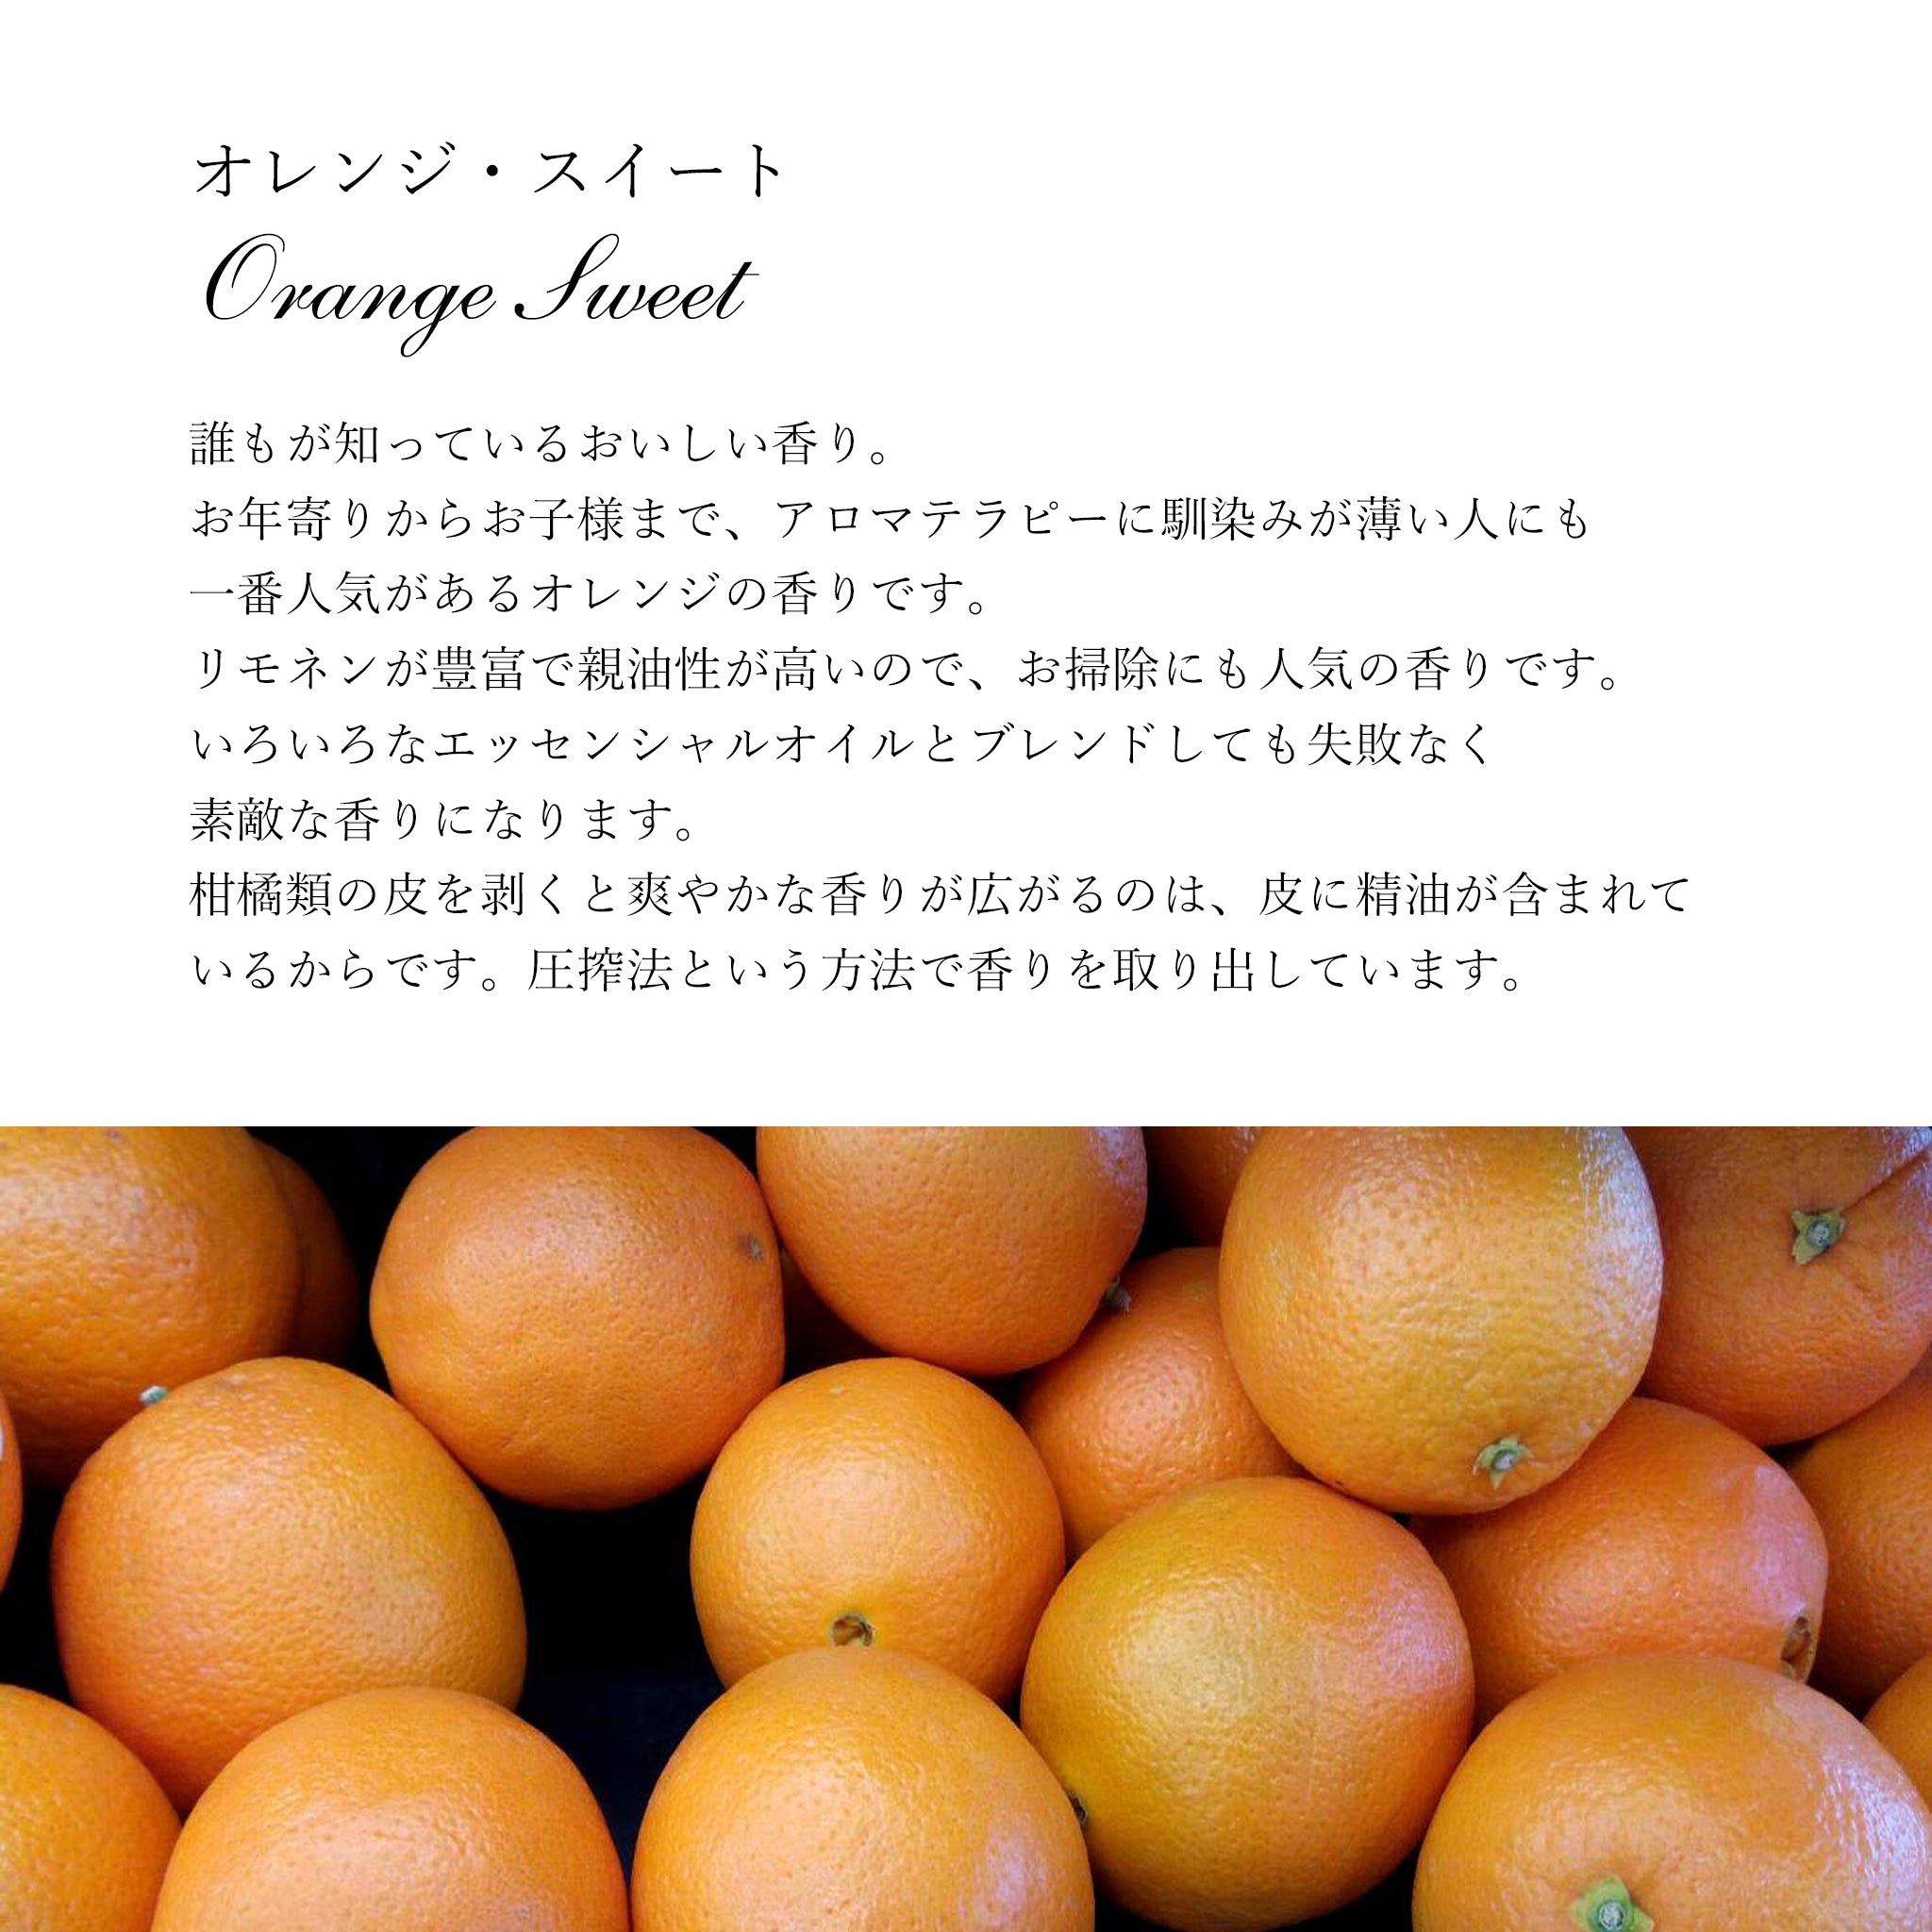 精油 オレンジスイート 5ml - エッセンシャルオイル